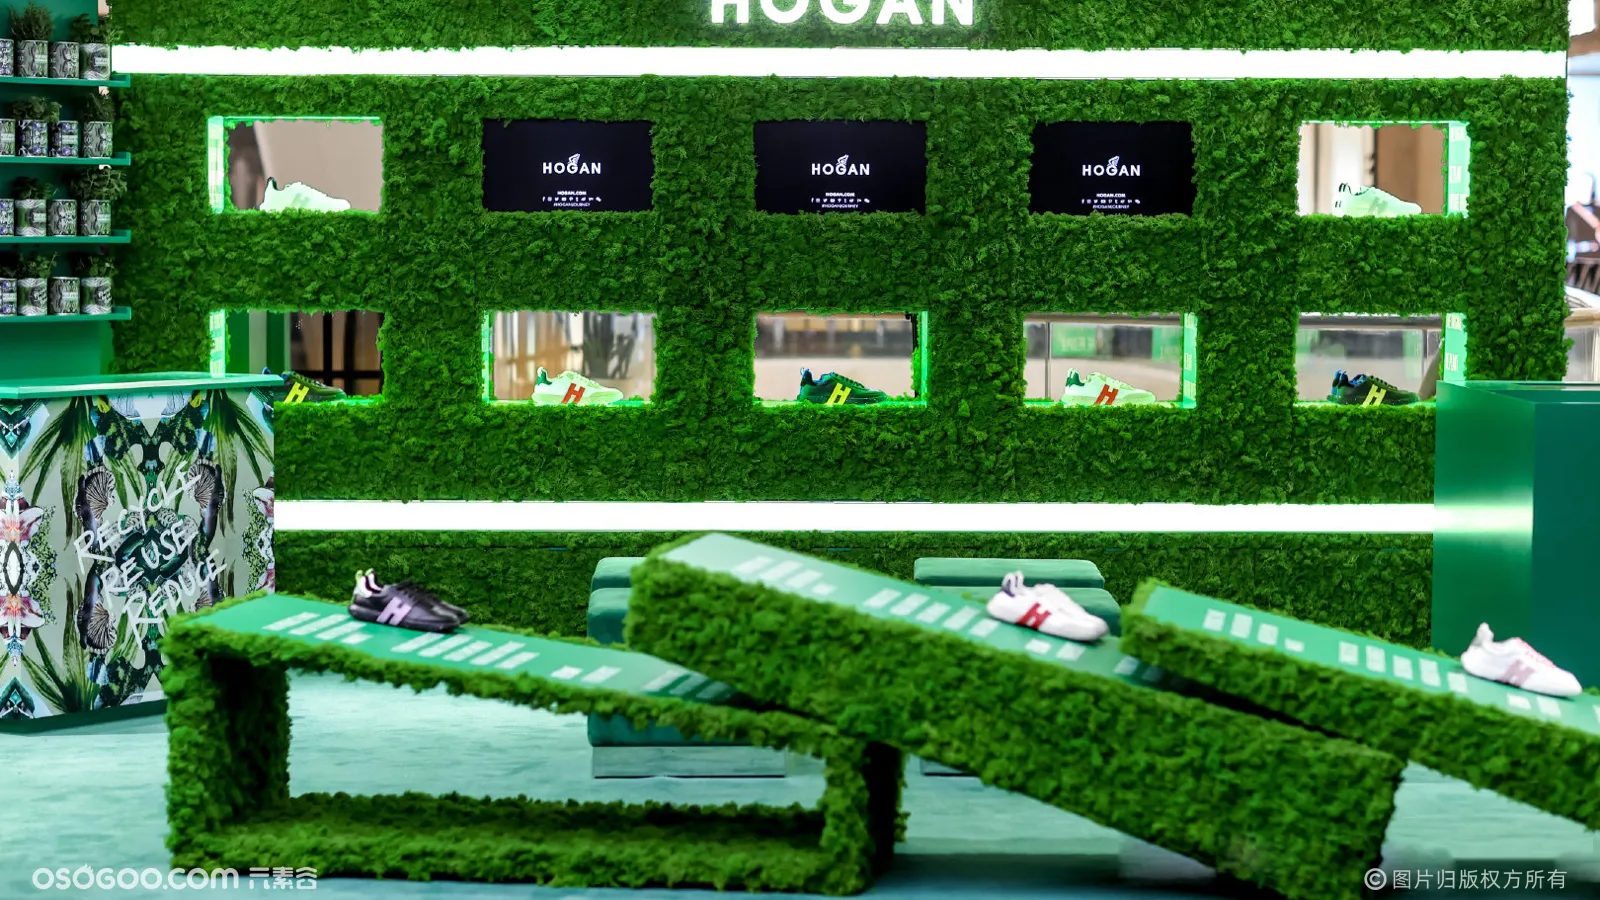 意式奢潮解码环保设想-HOGAN-3R环保系列快闪空间